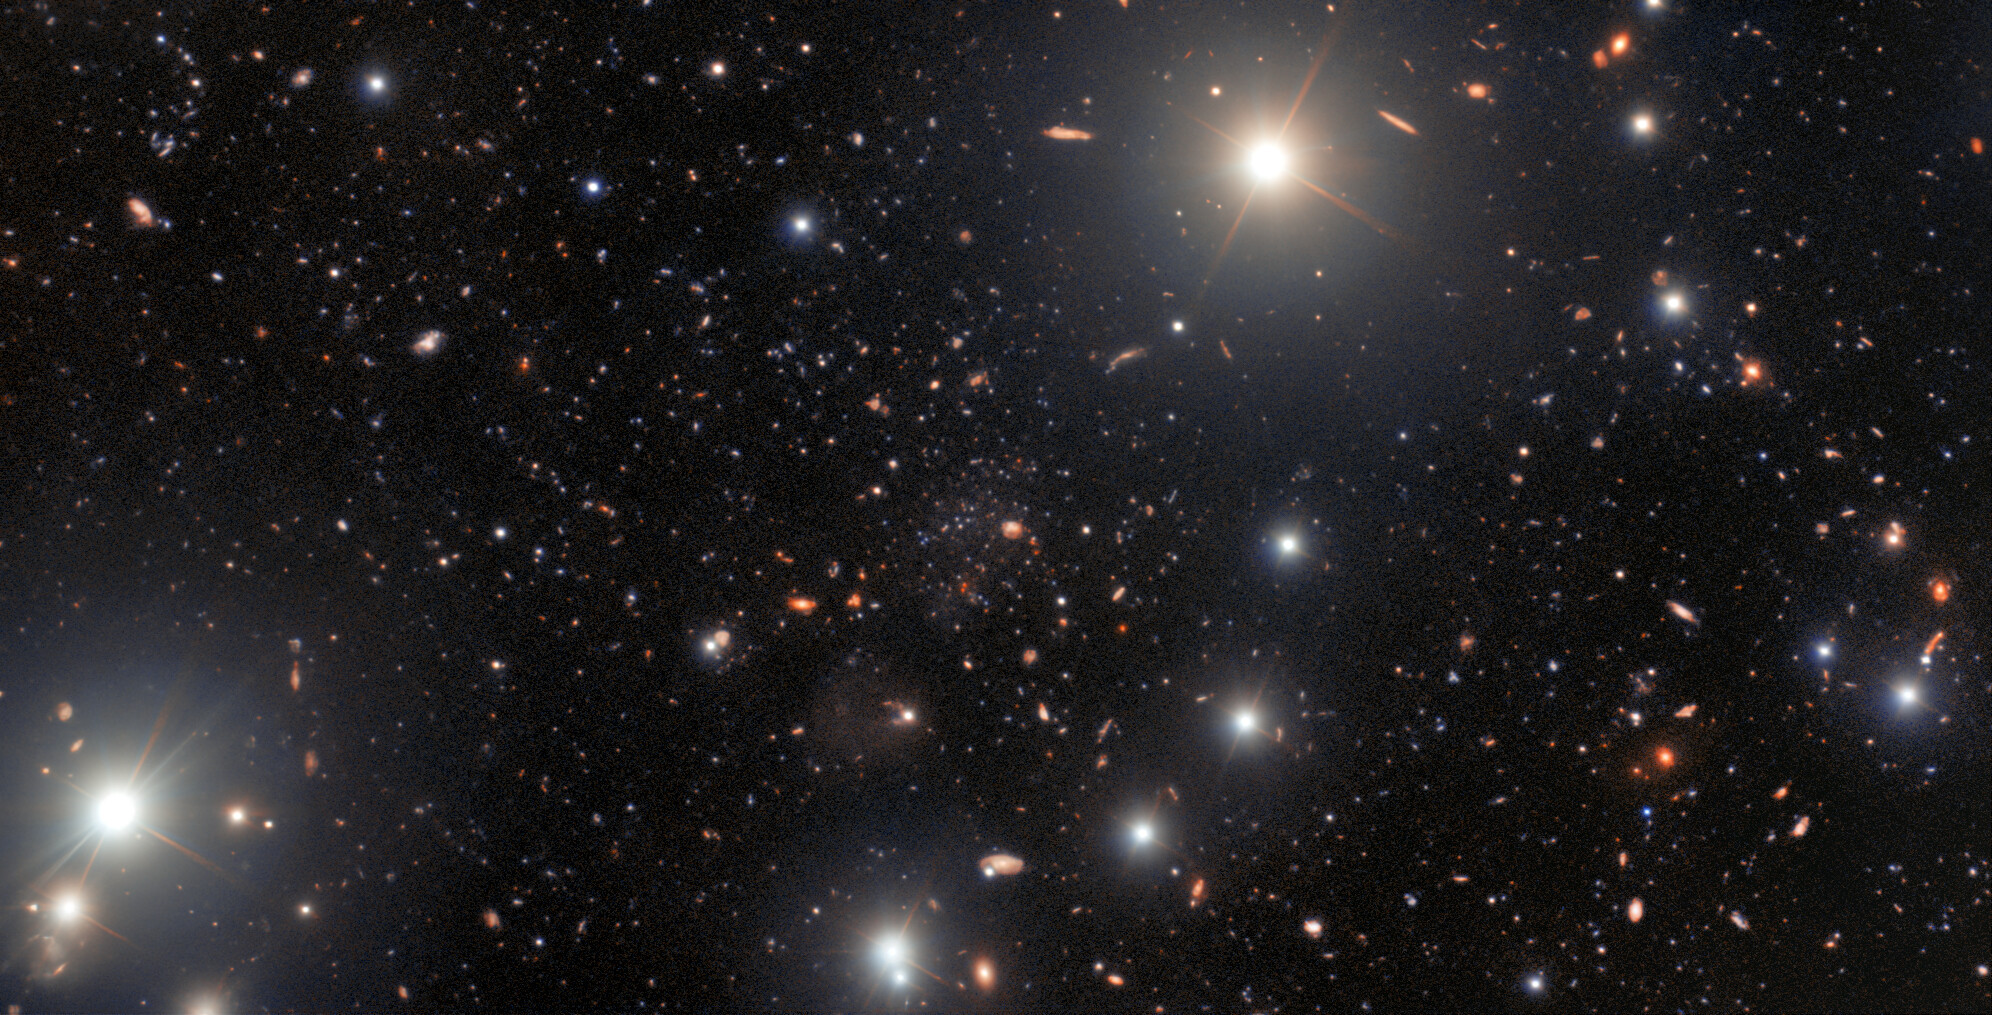 La galaxia enana de bajo brillo superficial, Pegasus V. Una galaxia enana de bajo brillo y única en su especie, fue descubierta en los bordes exteriores de la Galaxia de Andrómeda gracias a los agudos ojos de un astrónomo aficionado que examinaba los datos de archivo de la Cámara de Energía Oscura, fabricada por el Departamento de Energía de EE. UU. e instalada en el Telescopio Víctor M. Blanco de 4 metros, en el Observatorio de Cerro Tololo (CTIO), y que fueron procesados por el Community Science and Data Center (CSDC). El seguimiento posterior realizado por astrónomos profesionales utilizando el Observatorio Internacional Gemini, reveló que la galaxia enana, Pegasus V, contiene muy pocos elementos pesados y es probable que sea un fósil de las primeras galaxias. Las tres instalaciones involucradas en el hallazgo son programas de NOIRLab de NSF.